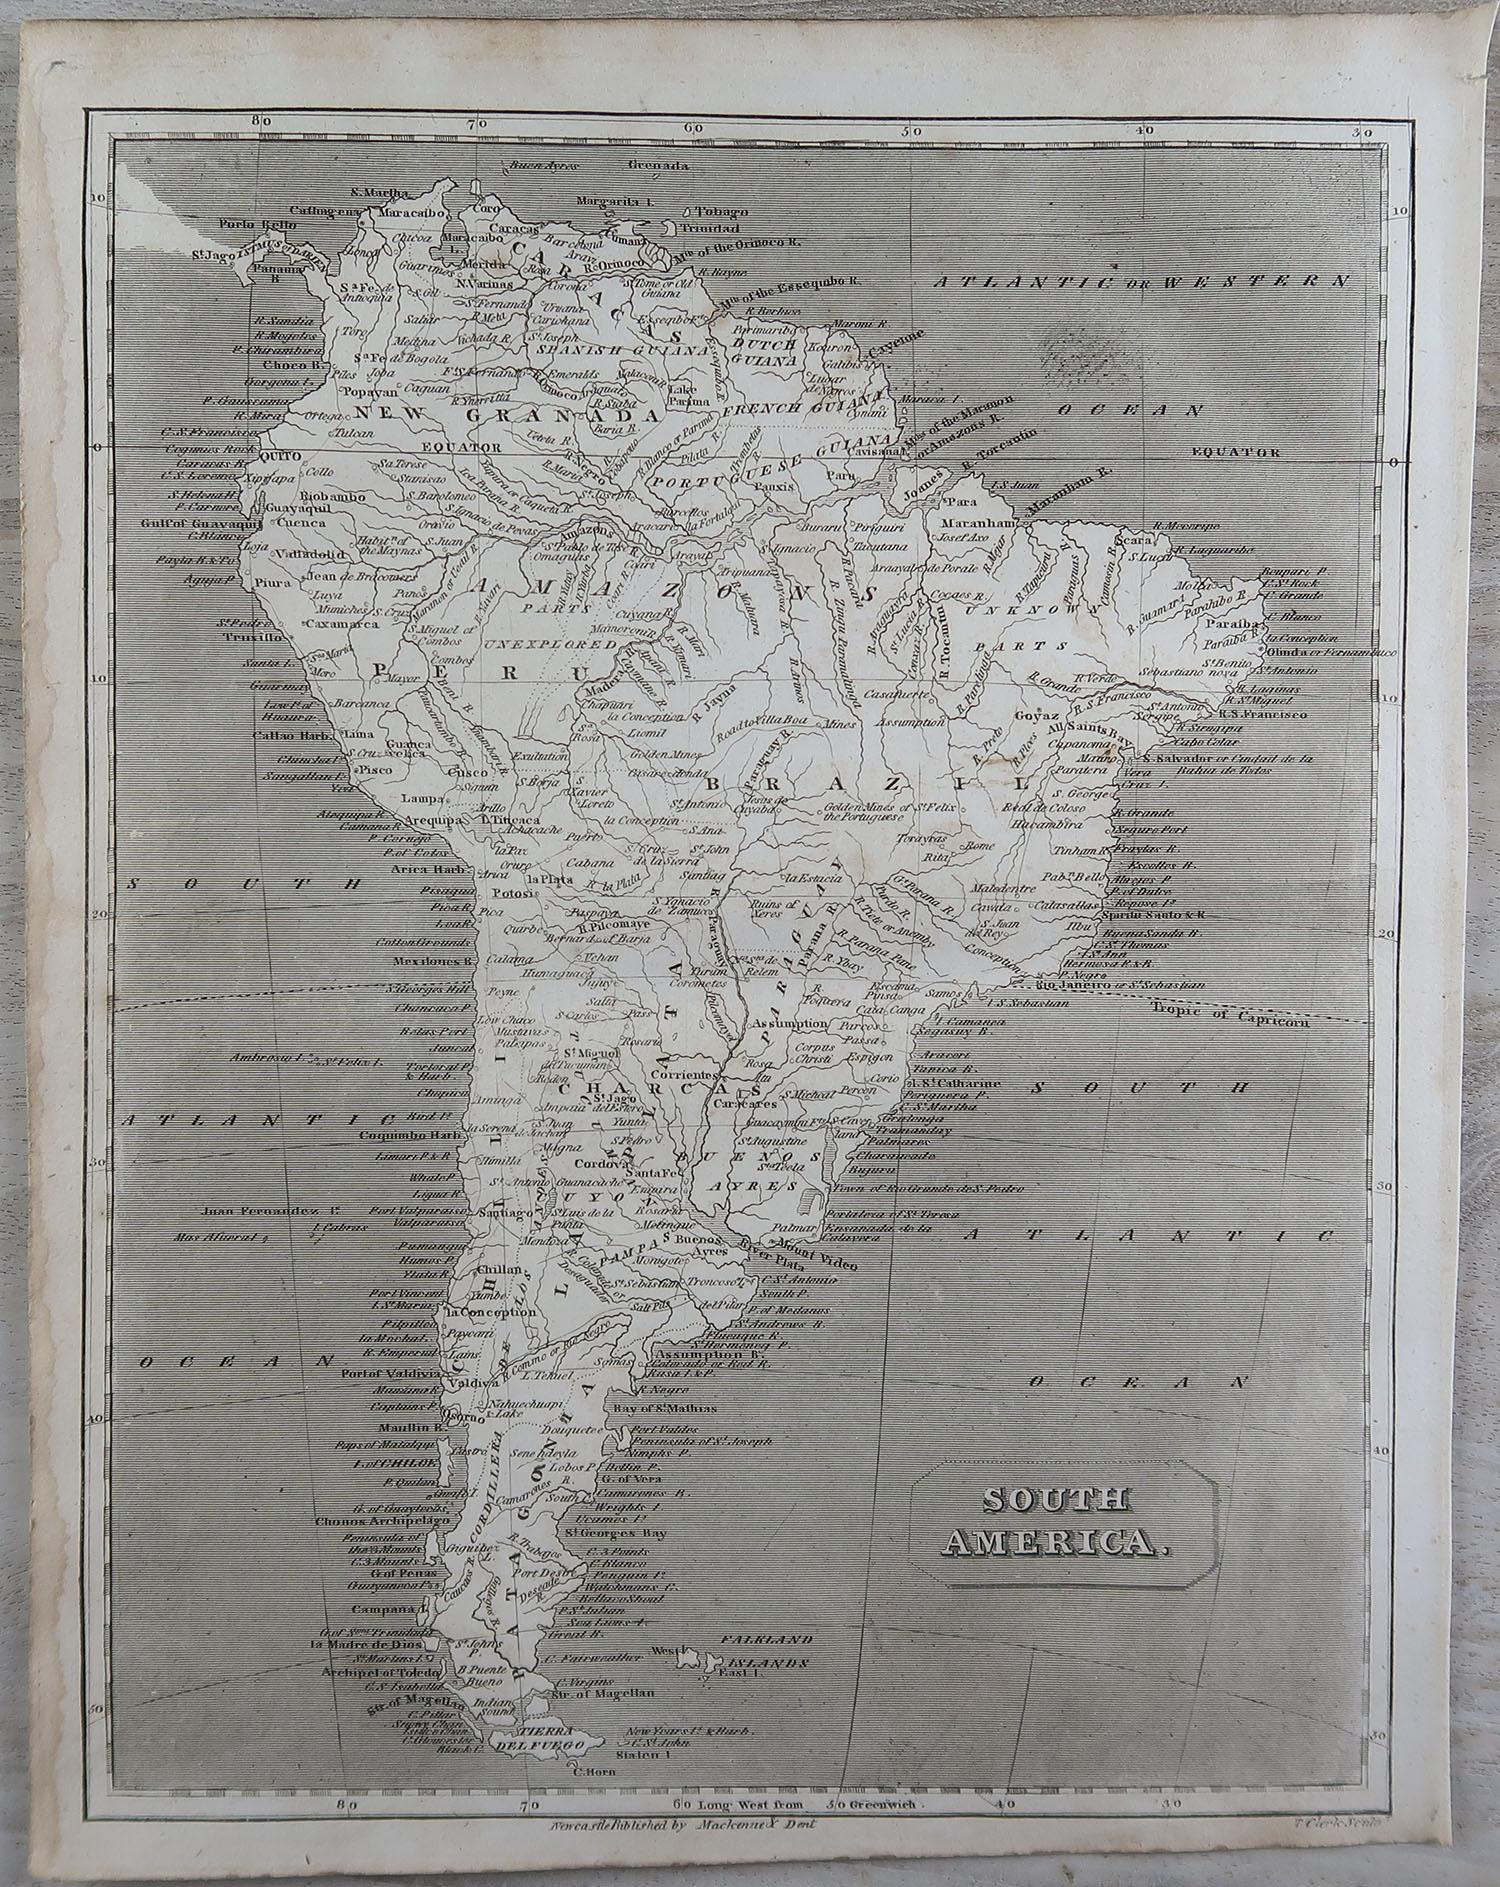 Grande carte de l'Amérique du Sud

Gravure sur cuivre

Dessiné et gravé par Thomas Clerk, Édimbourg.

Publié par Mackenzie et Dent, 1817

Non encadré.